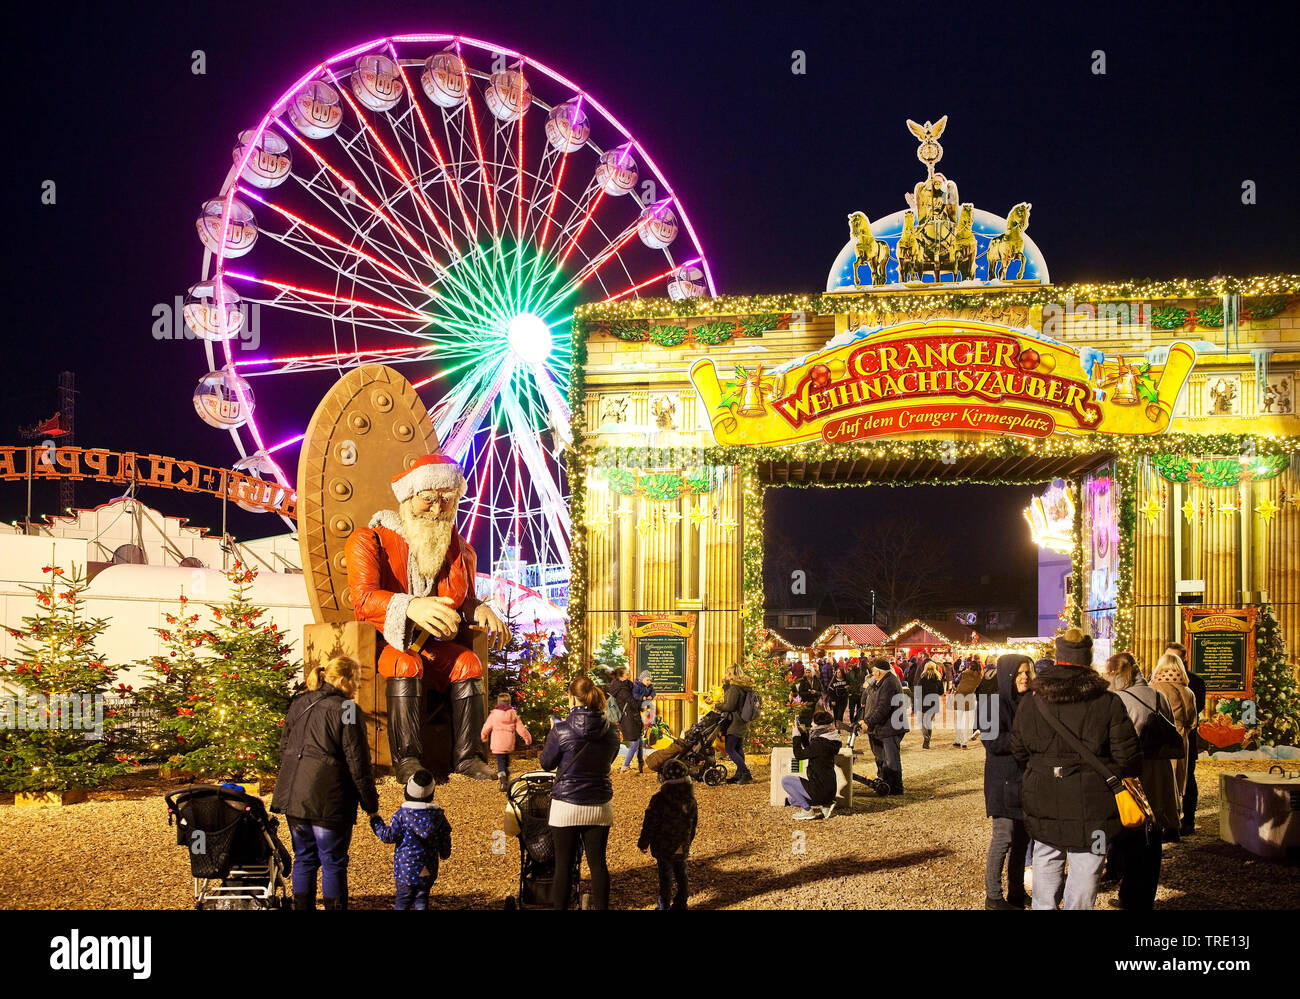 Weihnachten kirmes Criechinger, Deutschland, Nordrhein-Westfalen, Ruhrgebiet, Herne Stockfoto